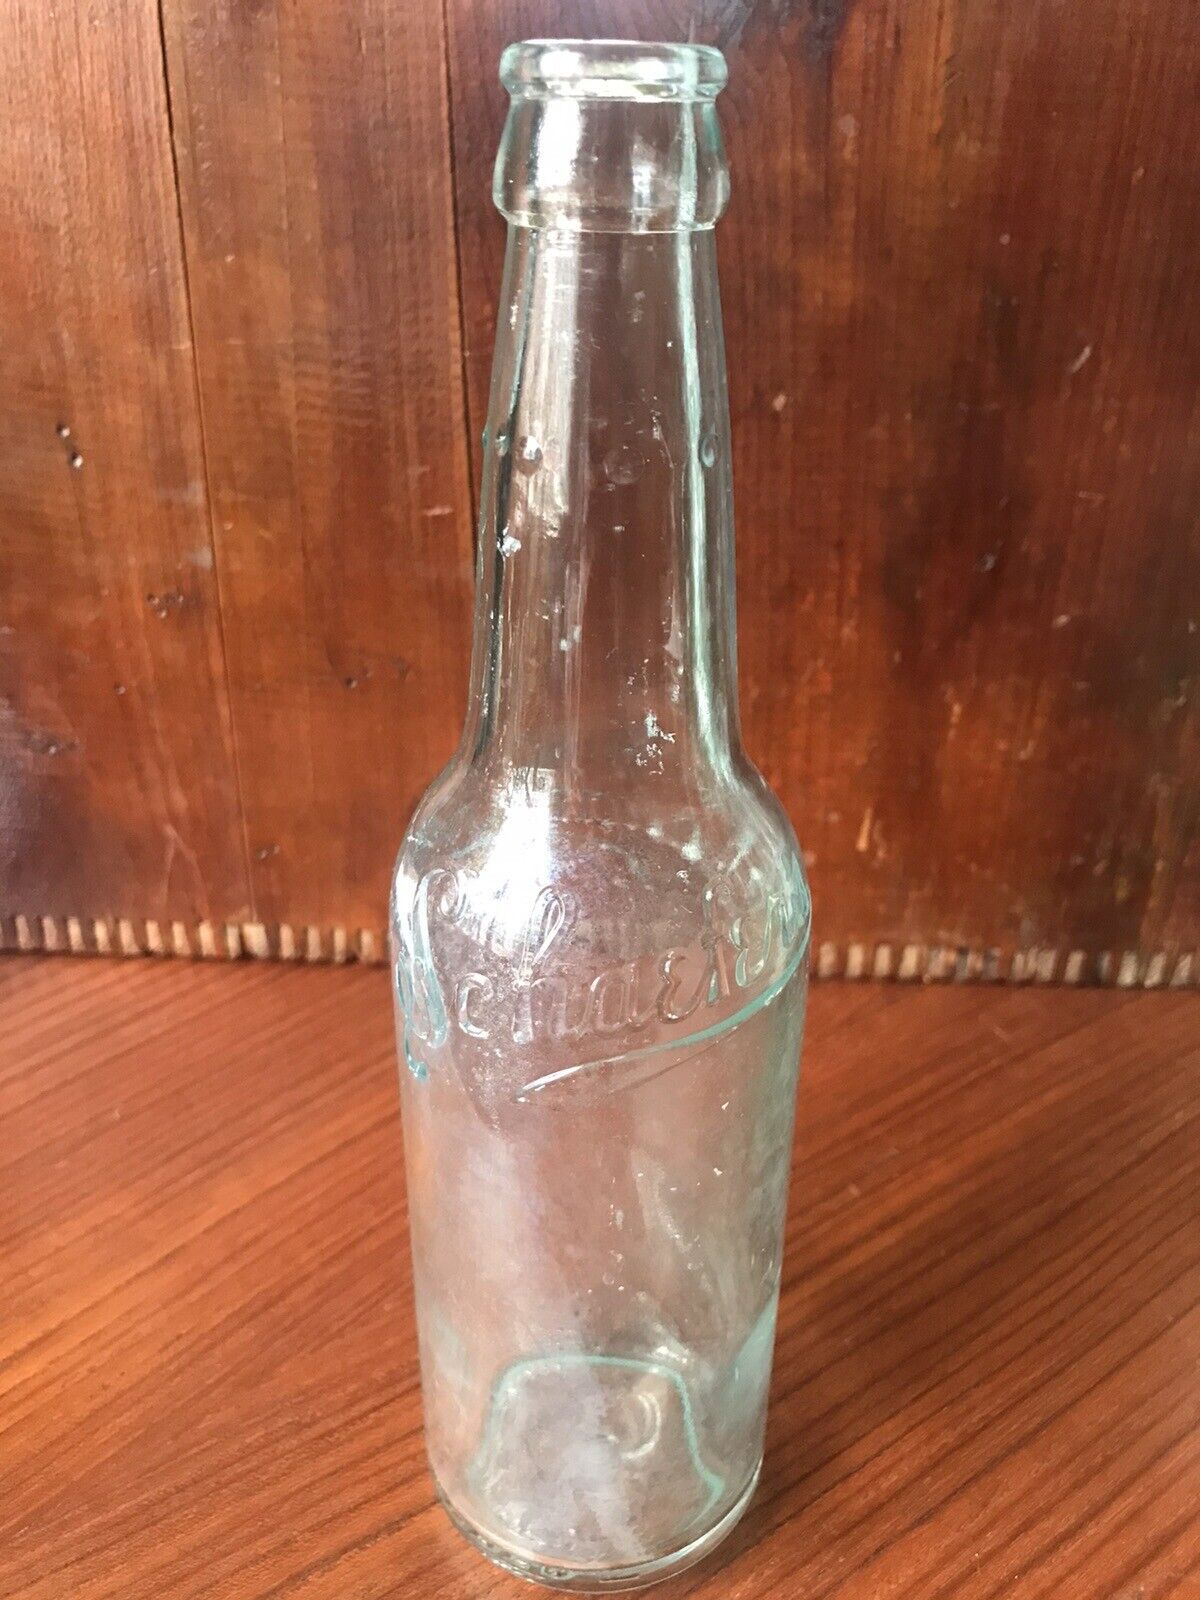 Vintage Schaefer’s Clear Beer Bottle ~ Embossed Lettered Sides ~ Blue Green Tint